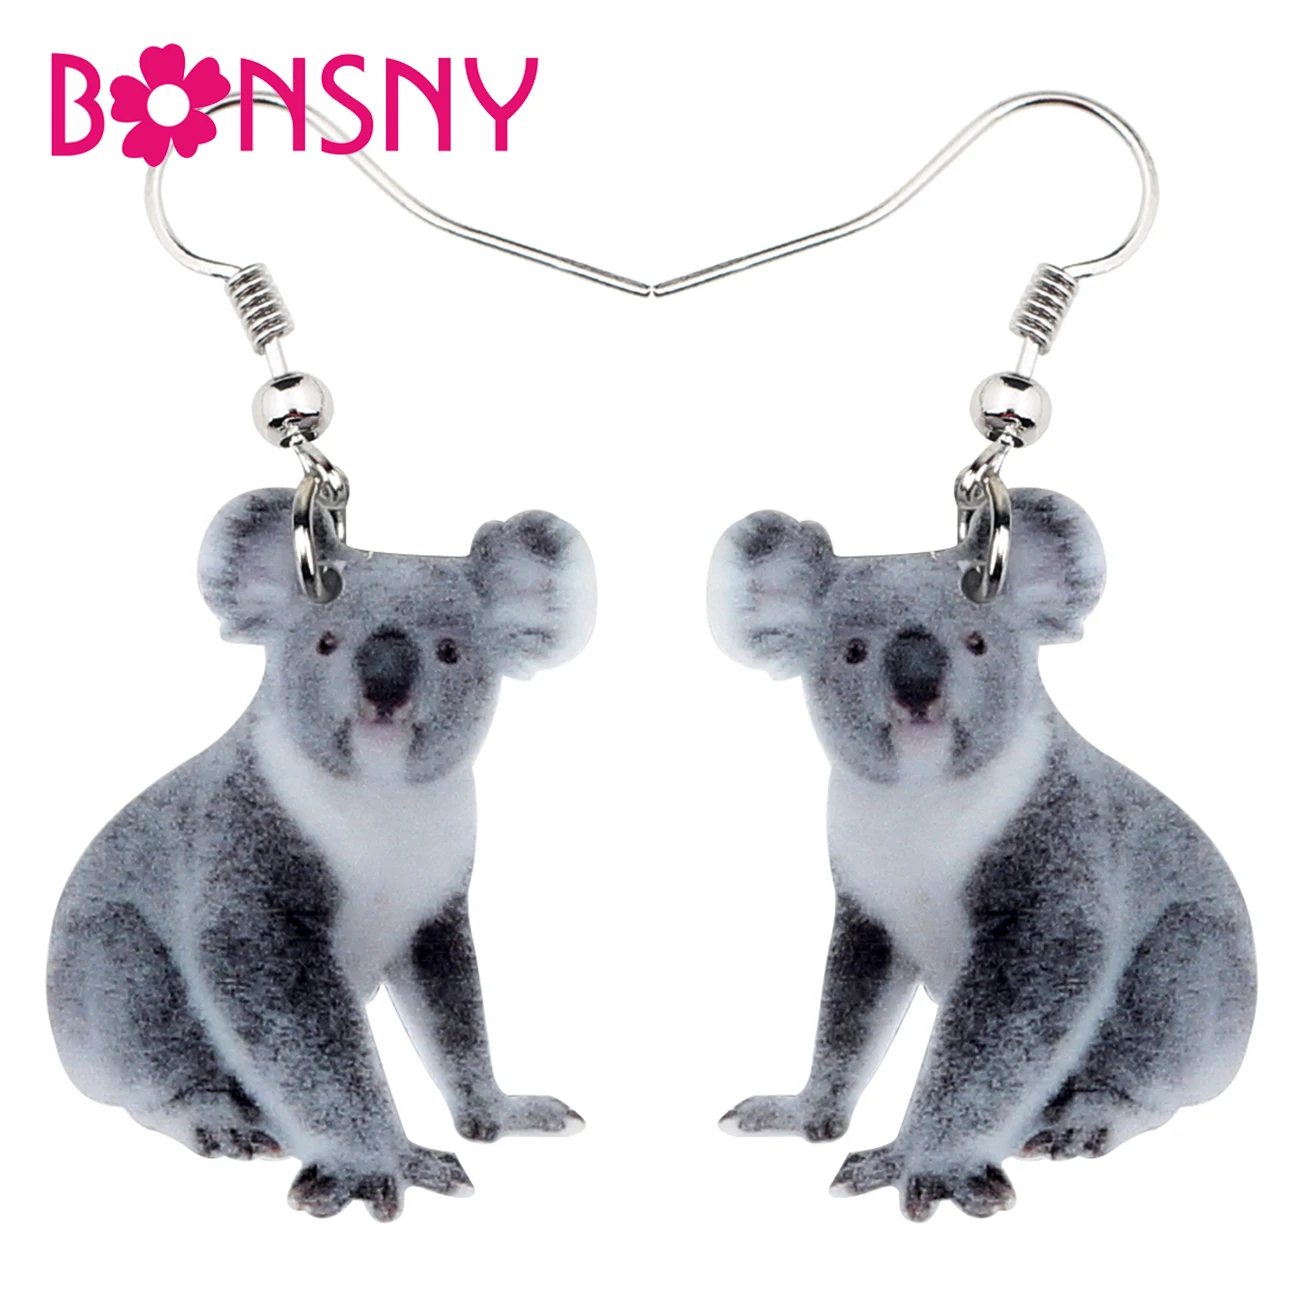 

Bonsny Statement Acrylic Australian Koala Bear Earrings Drop Dangle Cute Animal Novelty Jewelry For Women Girls Gifts Charms Hot